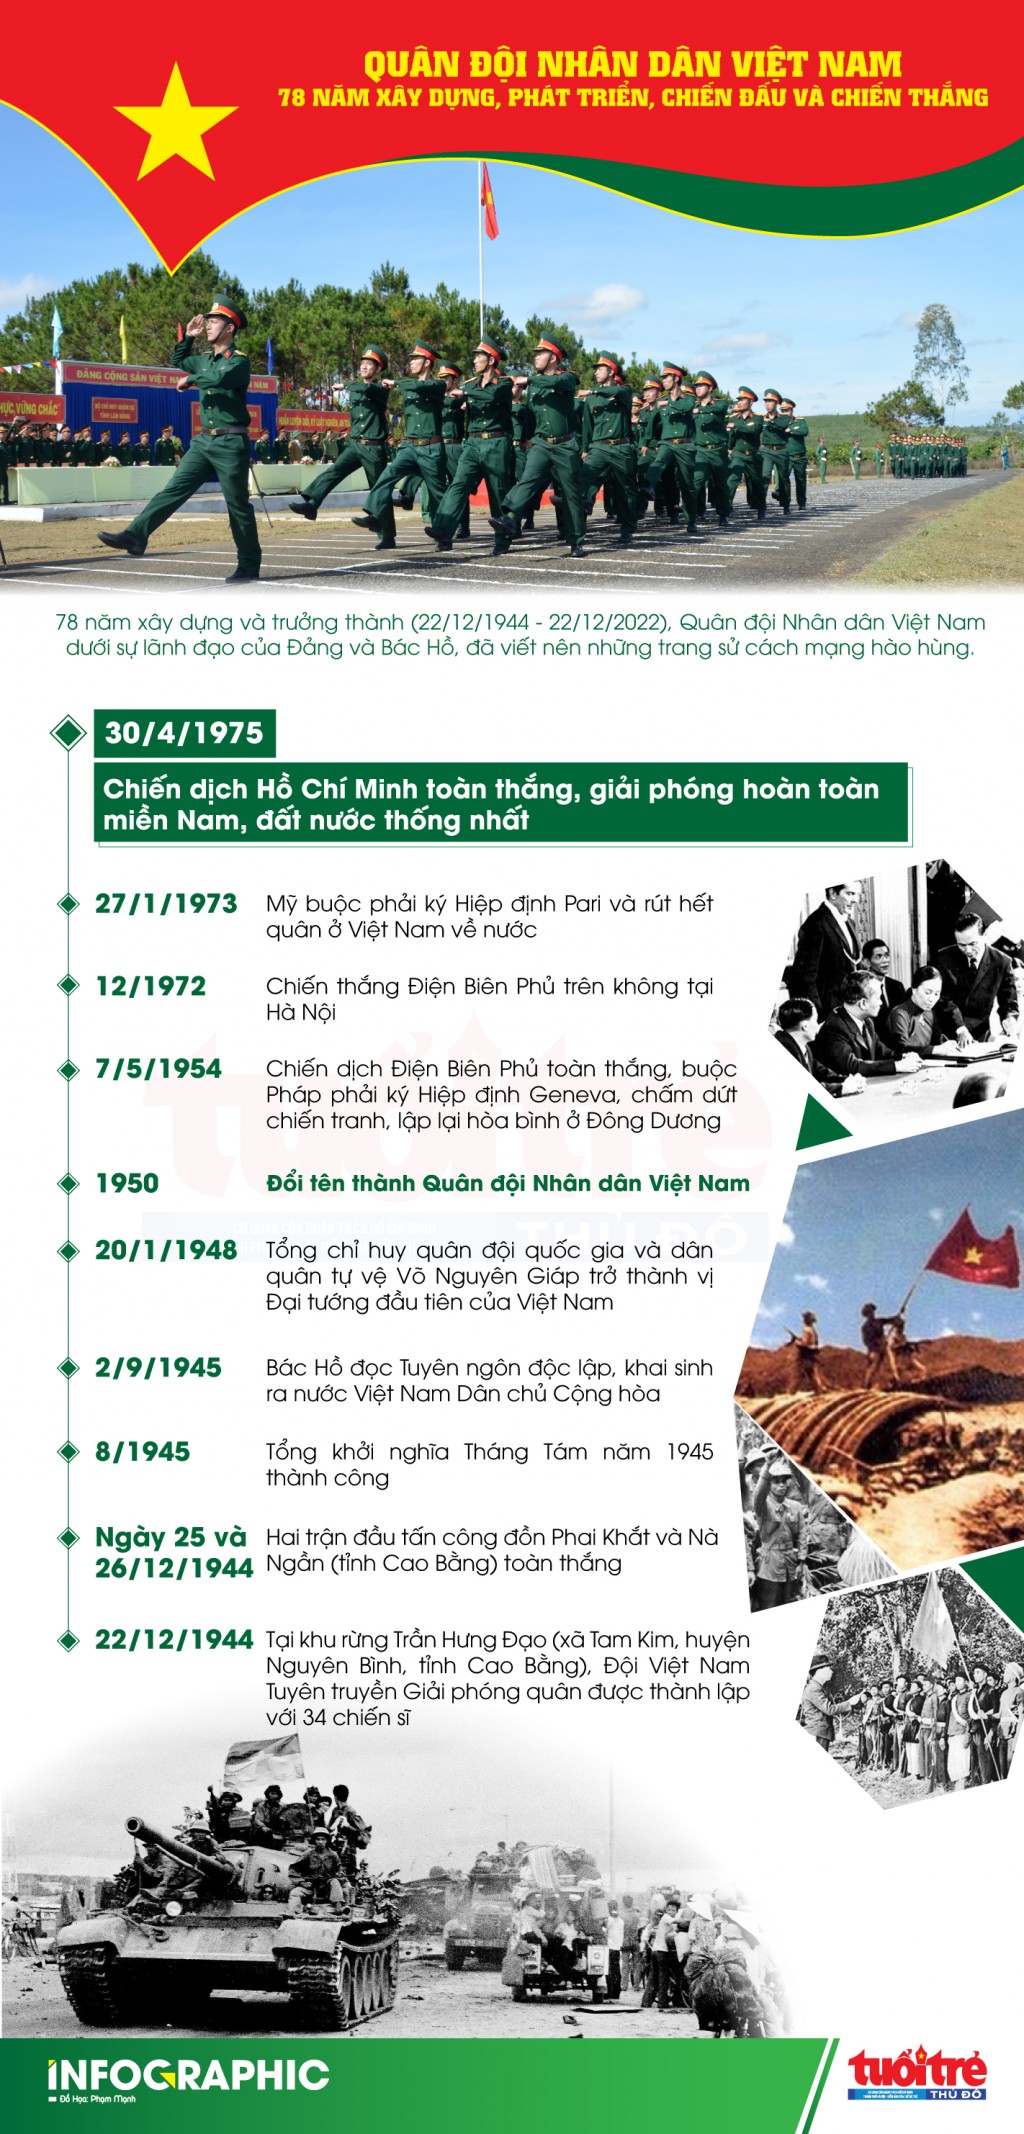 Quân đội Nhân dân Việt Nam - 78 năm xây dựng, phát triển, chiến đấu và chiến thắng